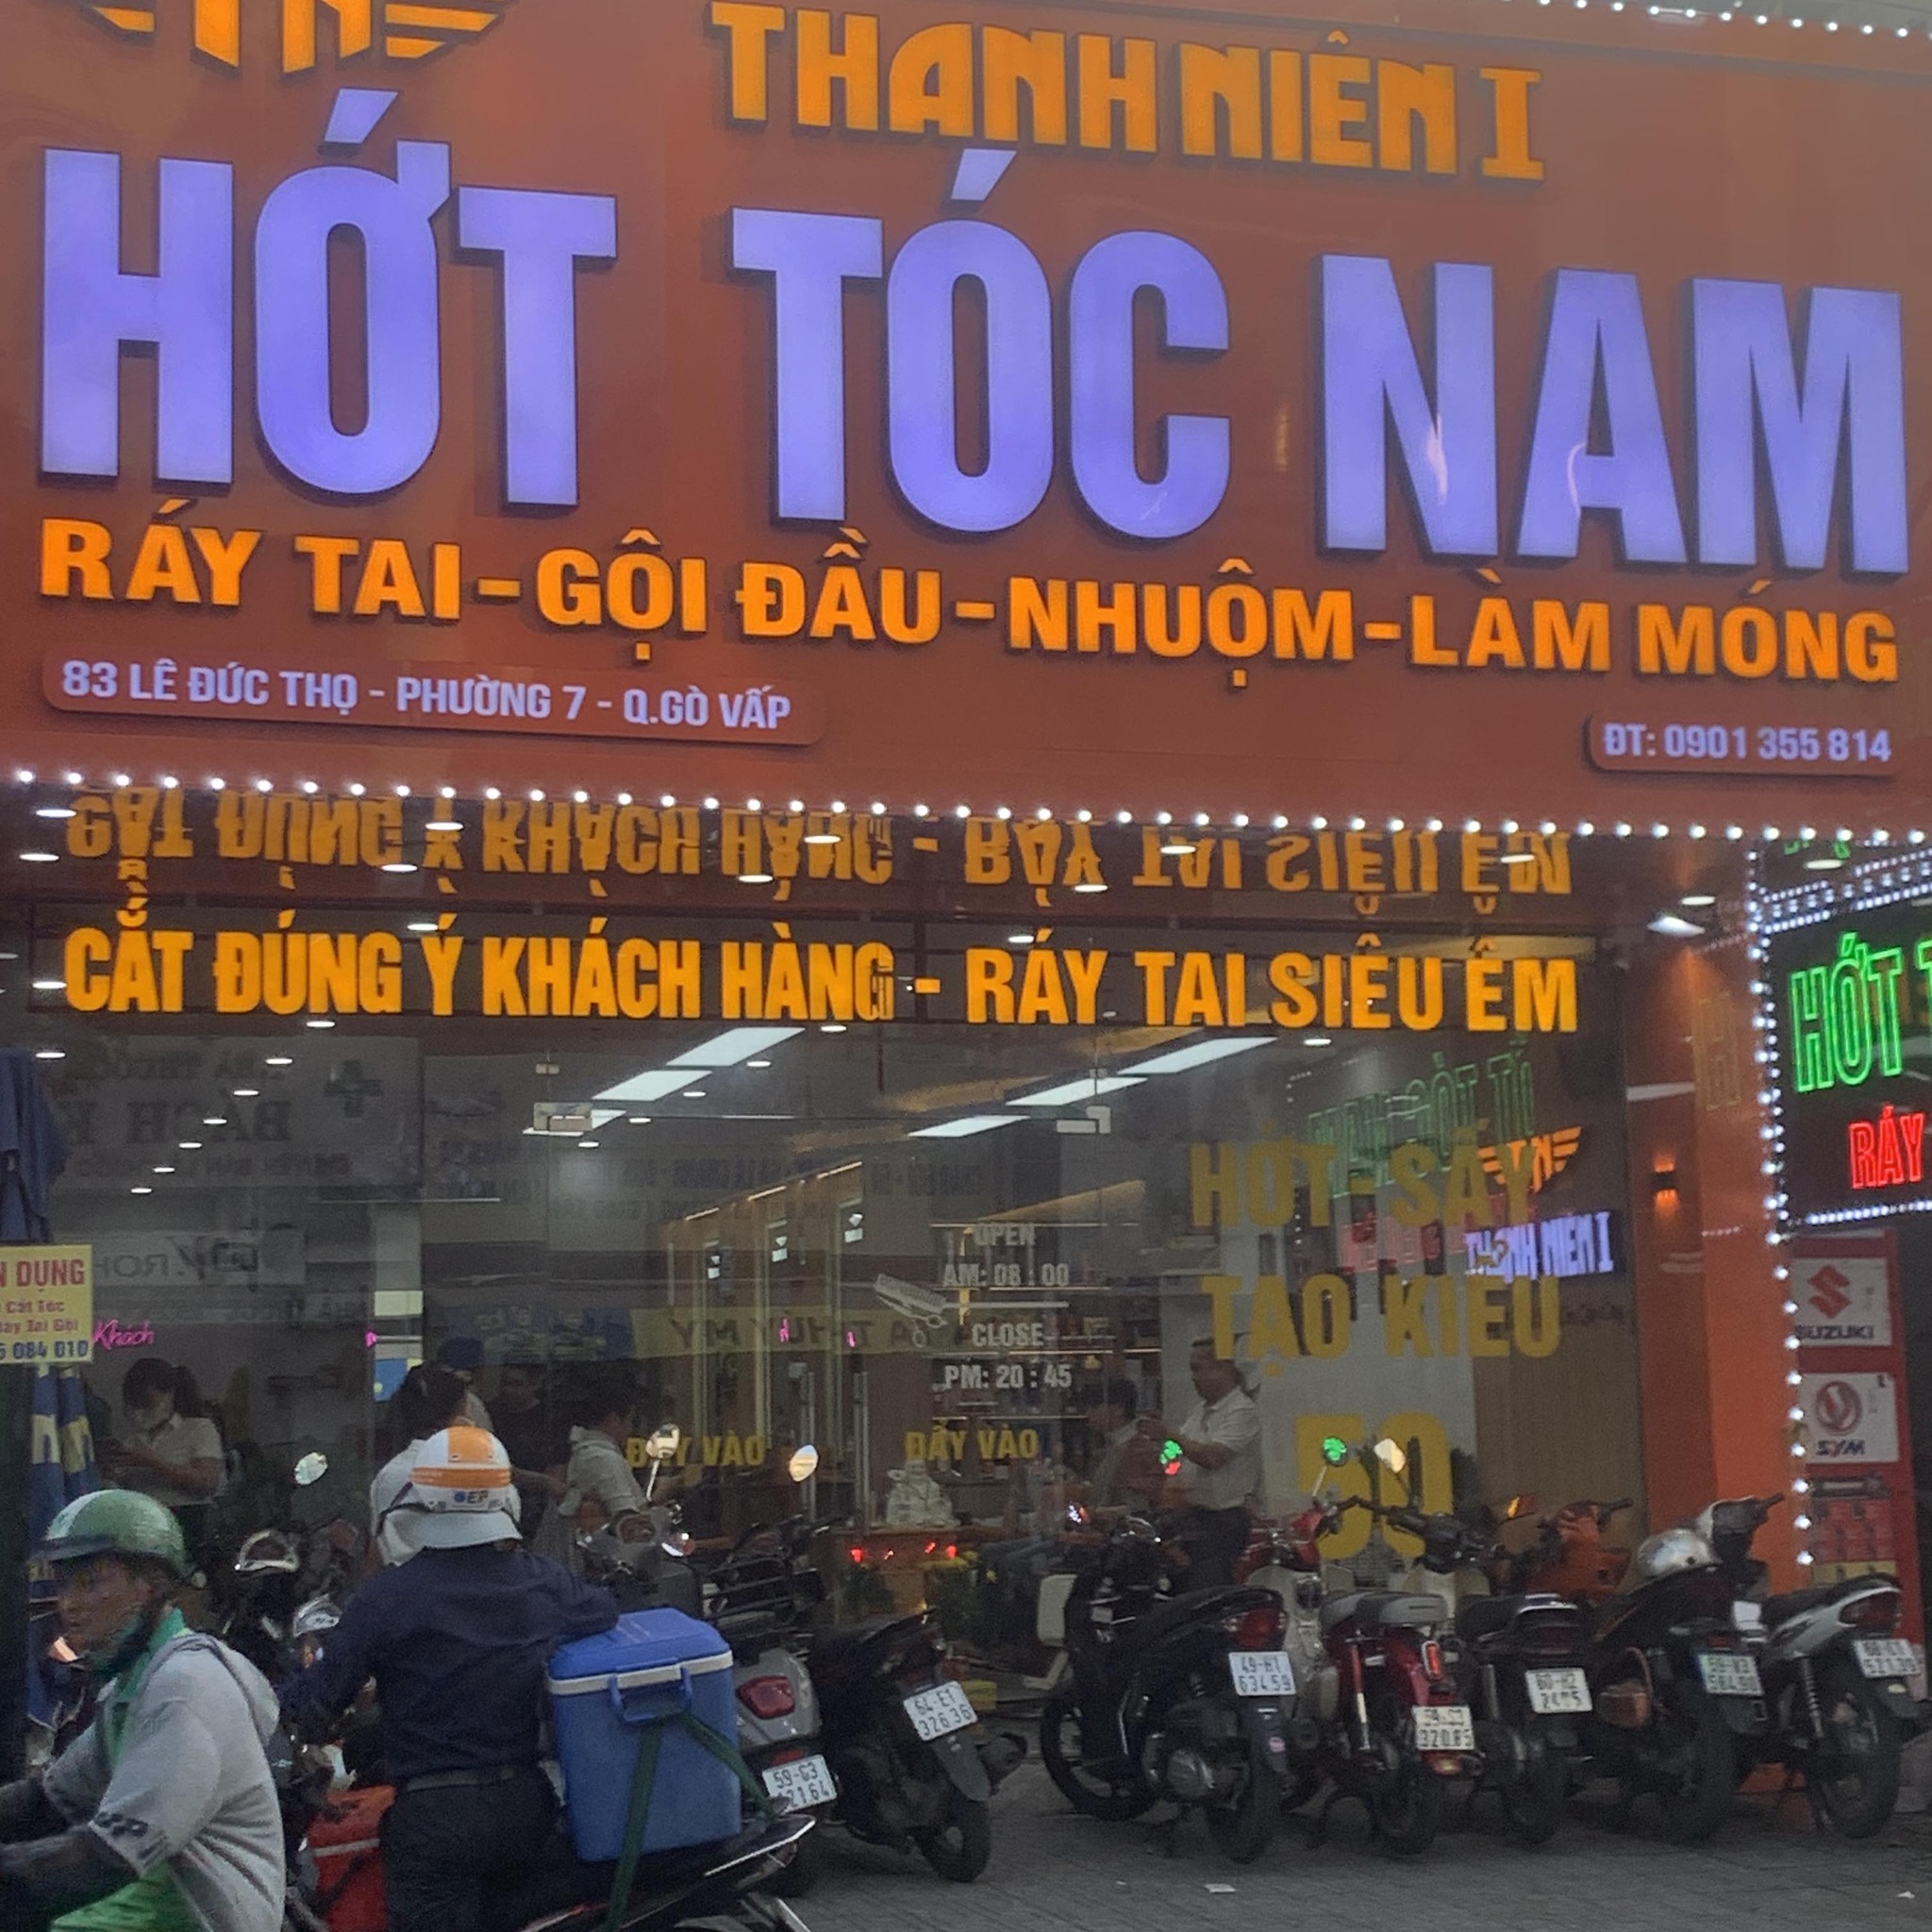 Tiệm cắt tóc nam đẹp và chất lượng nhất quận Gò Vấp, TP. HCM